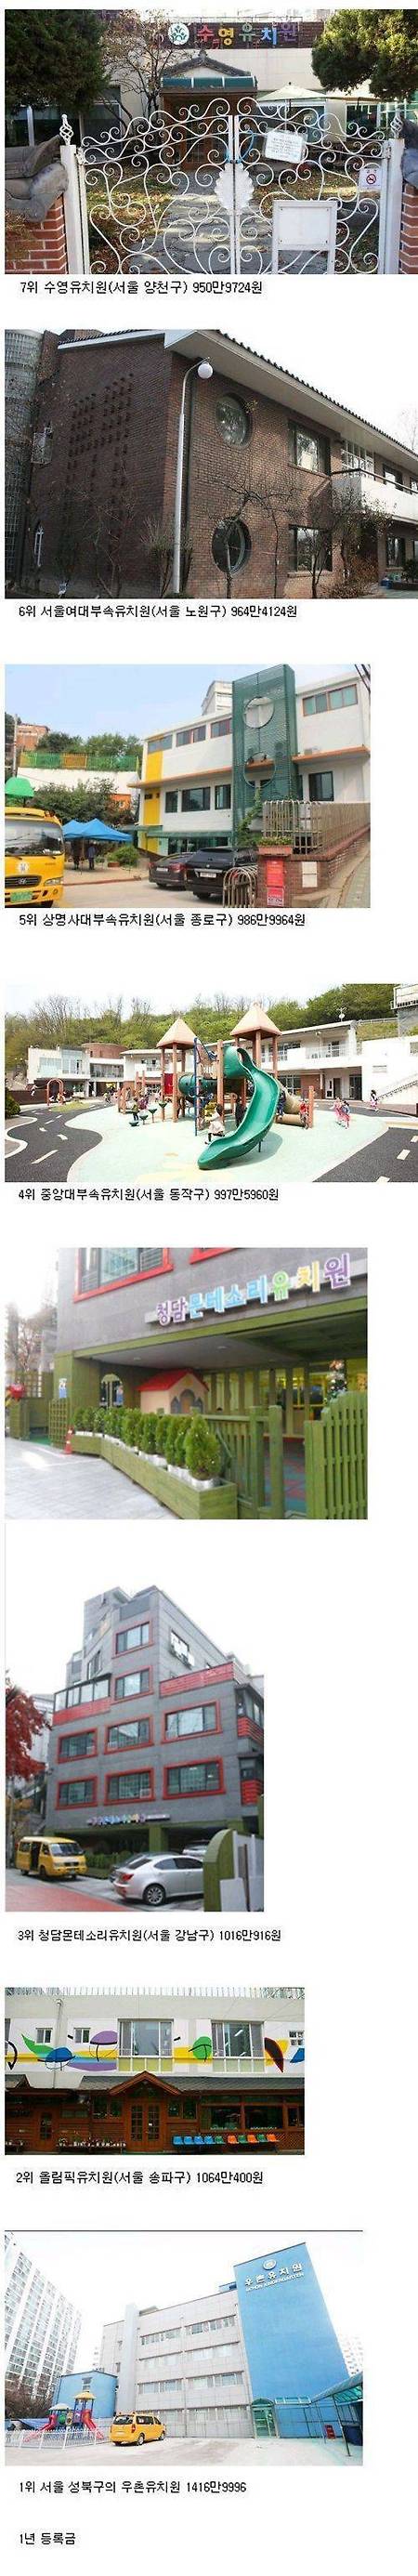 서울시내 유치원 1년 등록금 TOP7